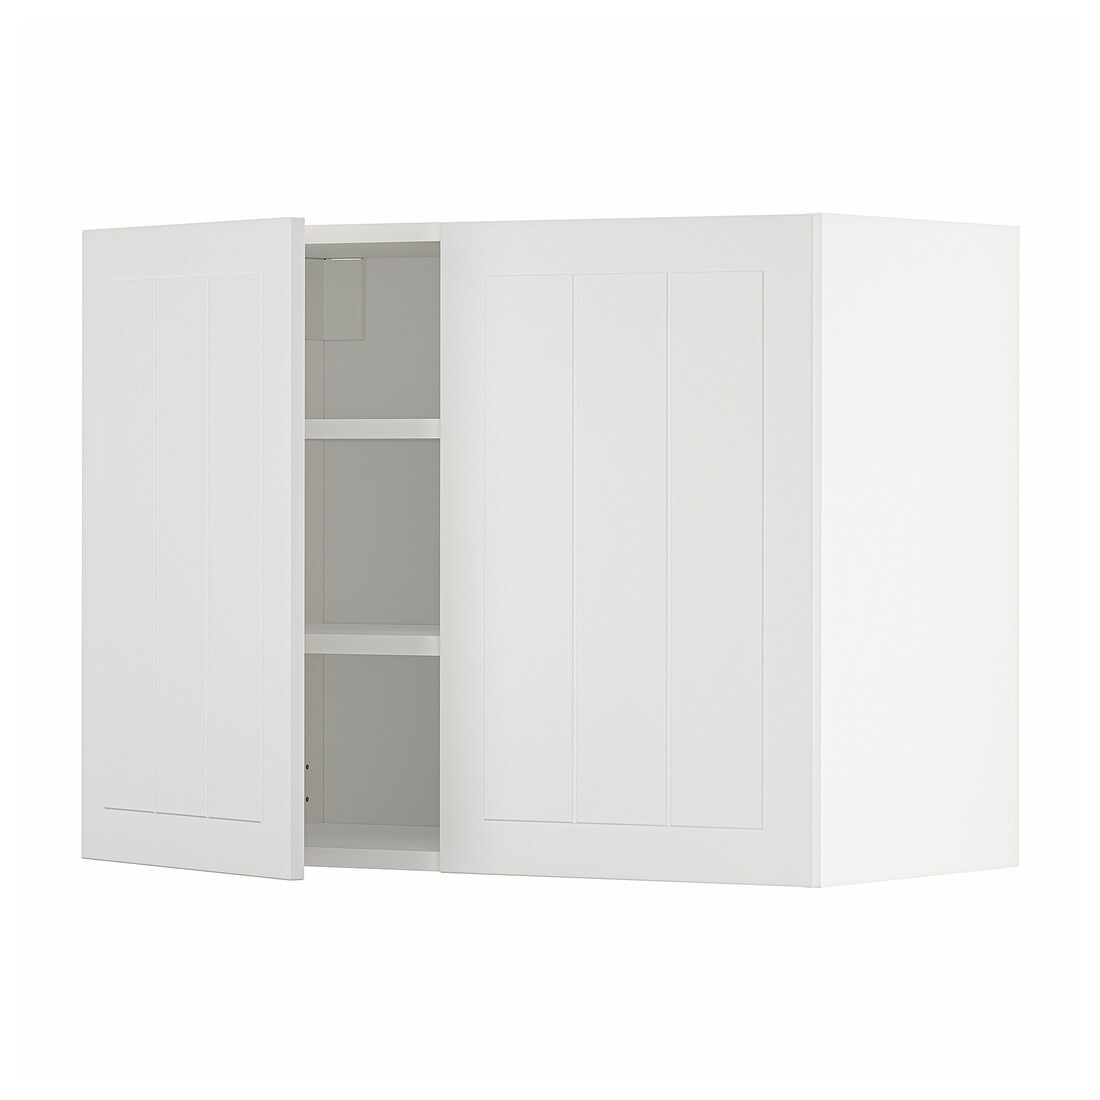 METOD МЕТОД Навісна шафа з полицями / 2 дверцят, білий / Stensund білий, 80x60 см